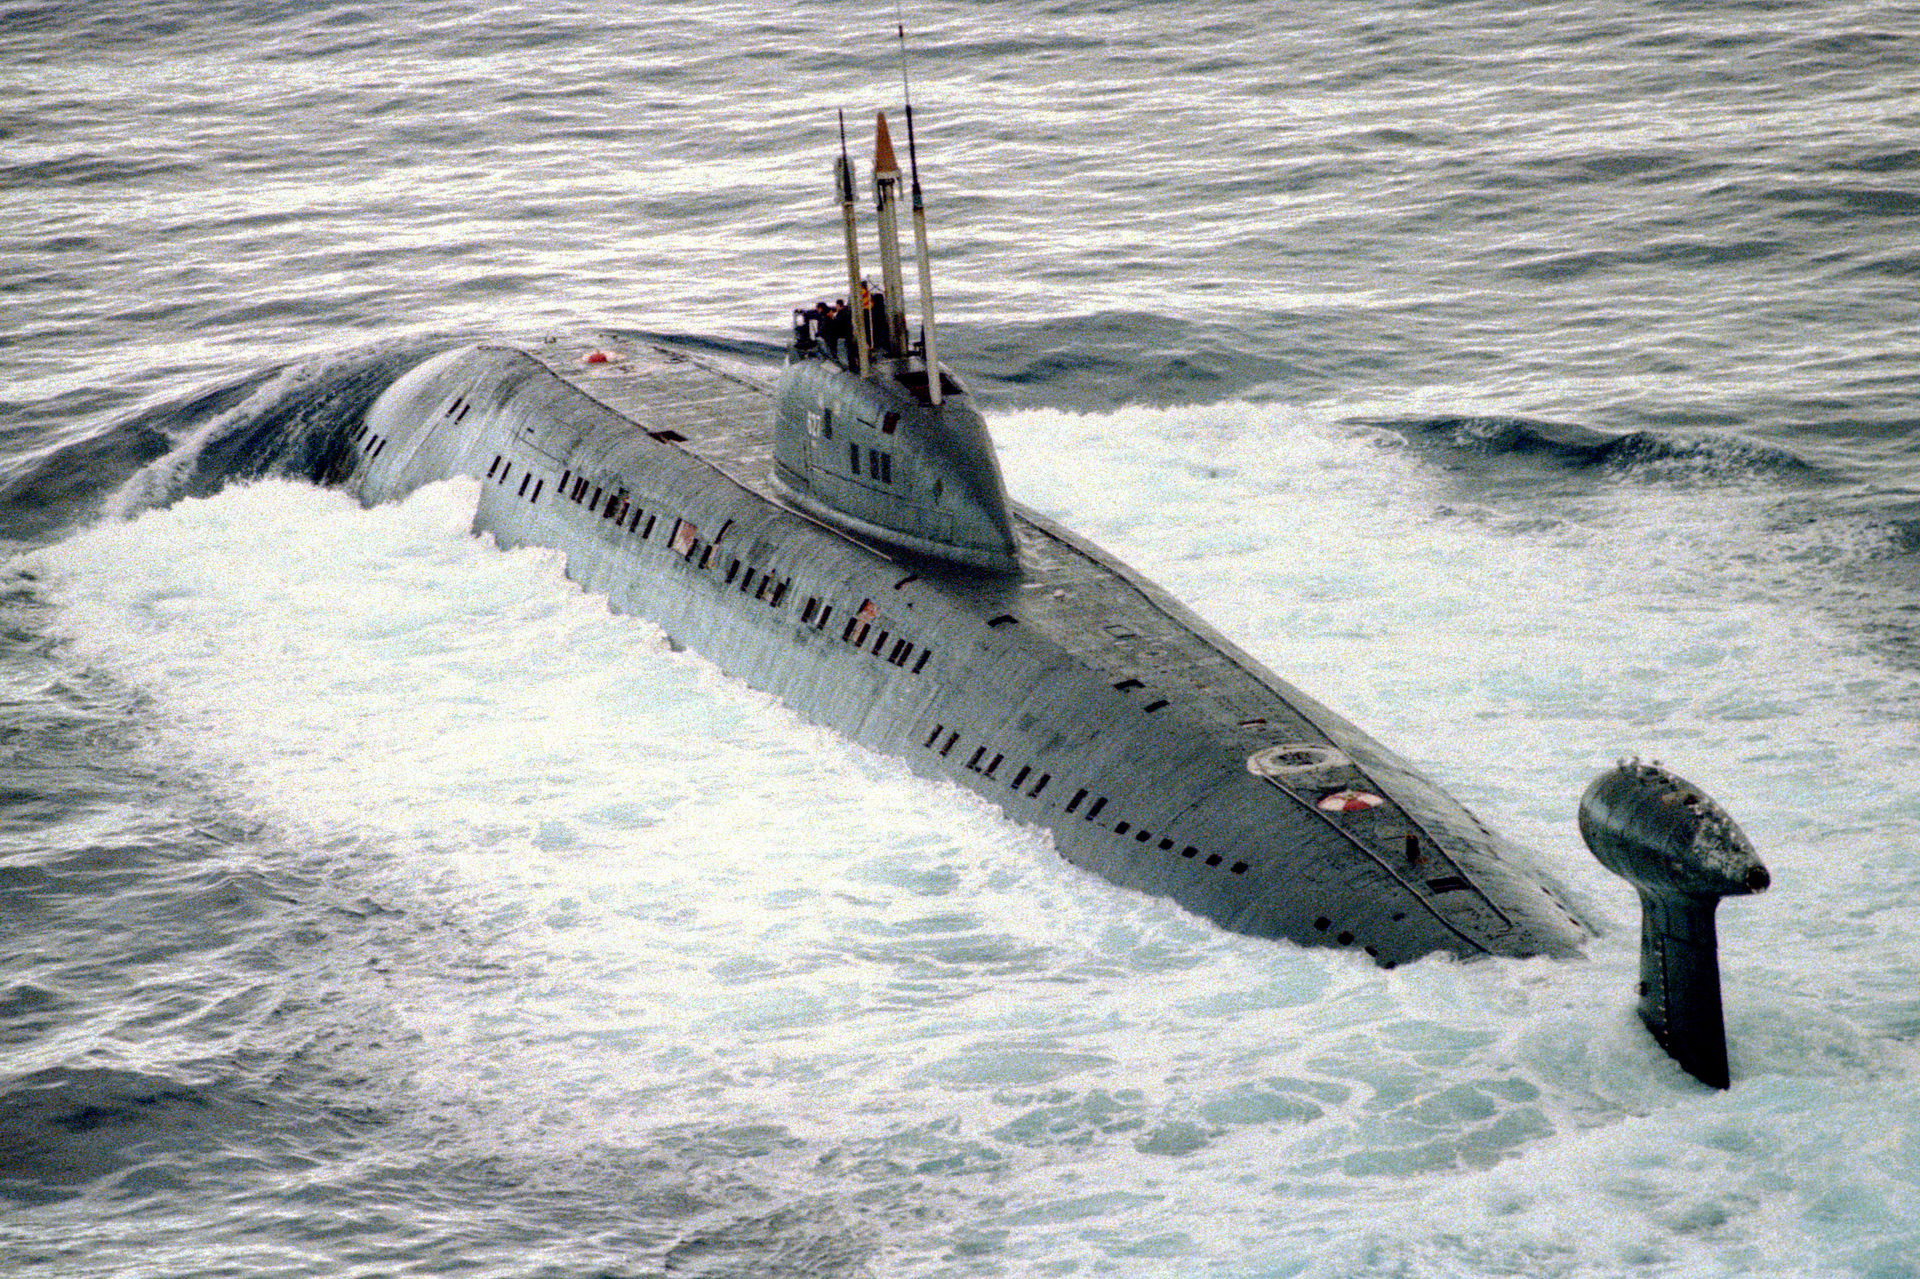 Подводная лодка класса "Виктор III", аналогичная К-324. Фото © Wikipedia